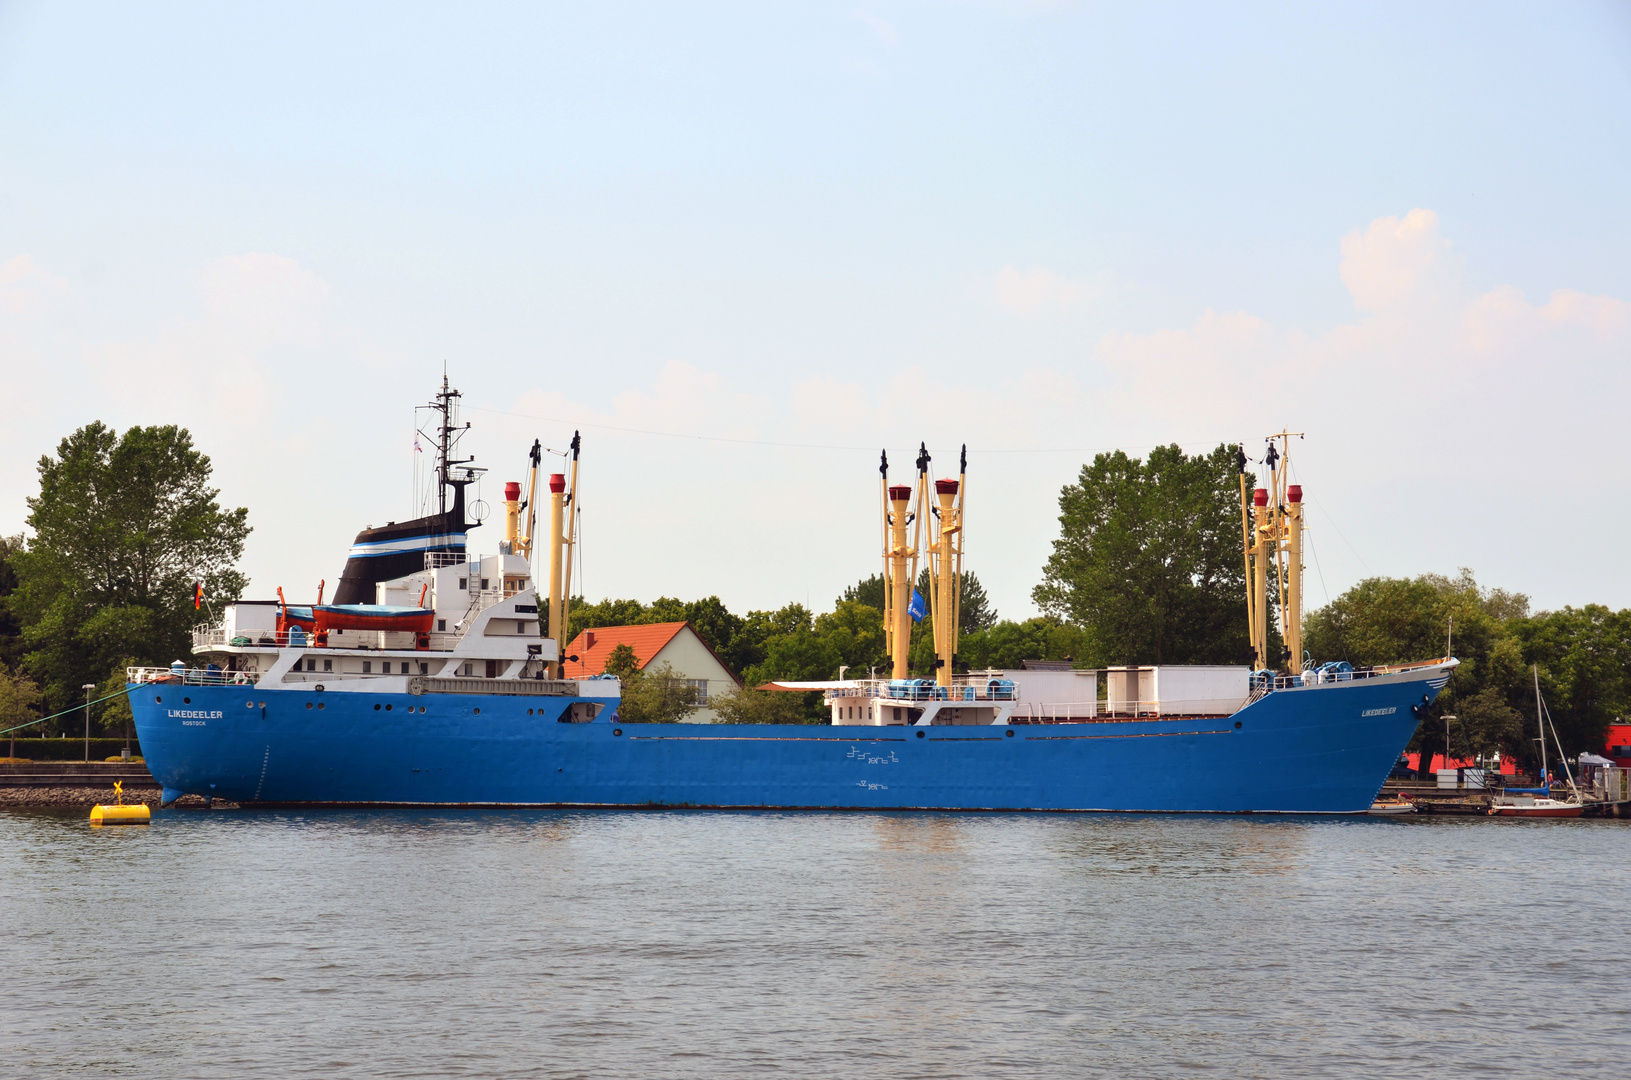 Das Jugendschiff "Likedeeler" in Rostock